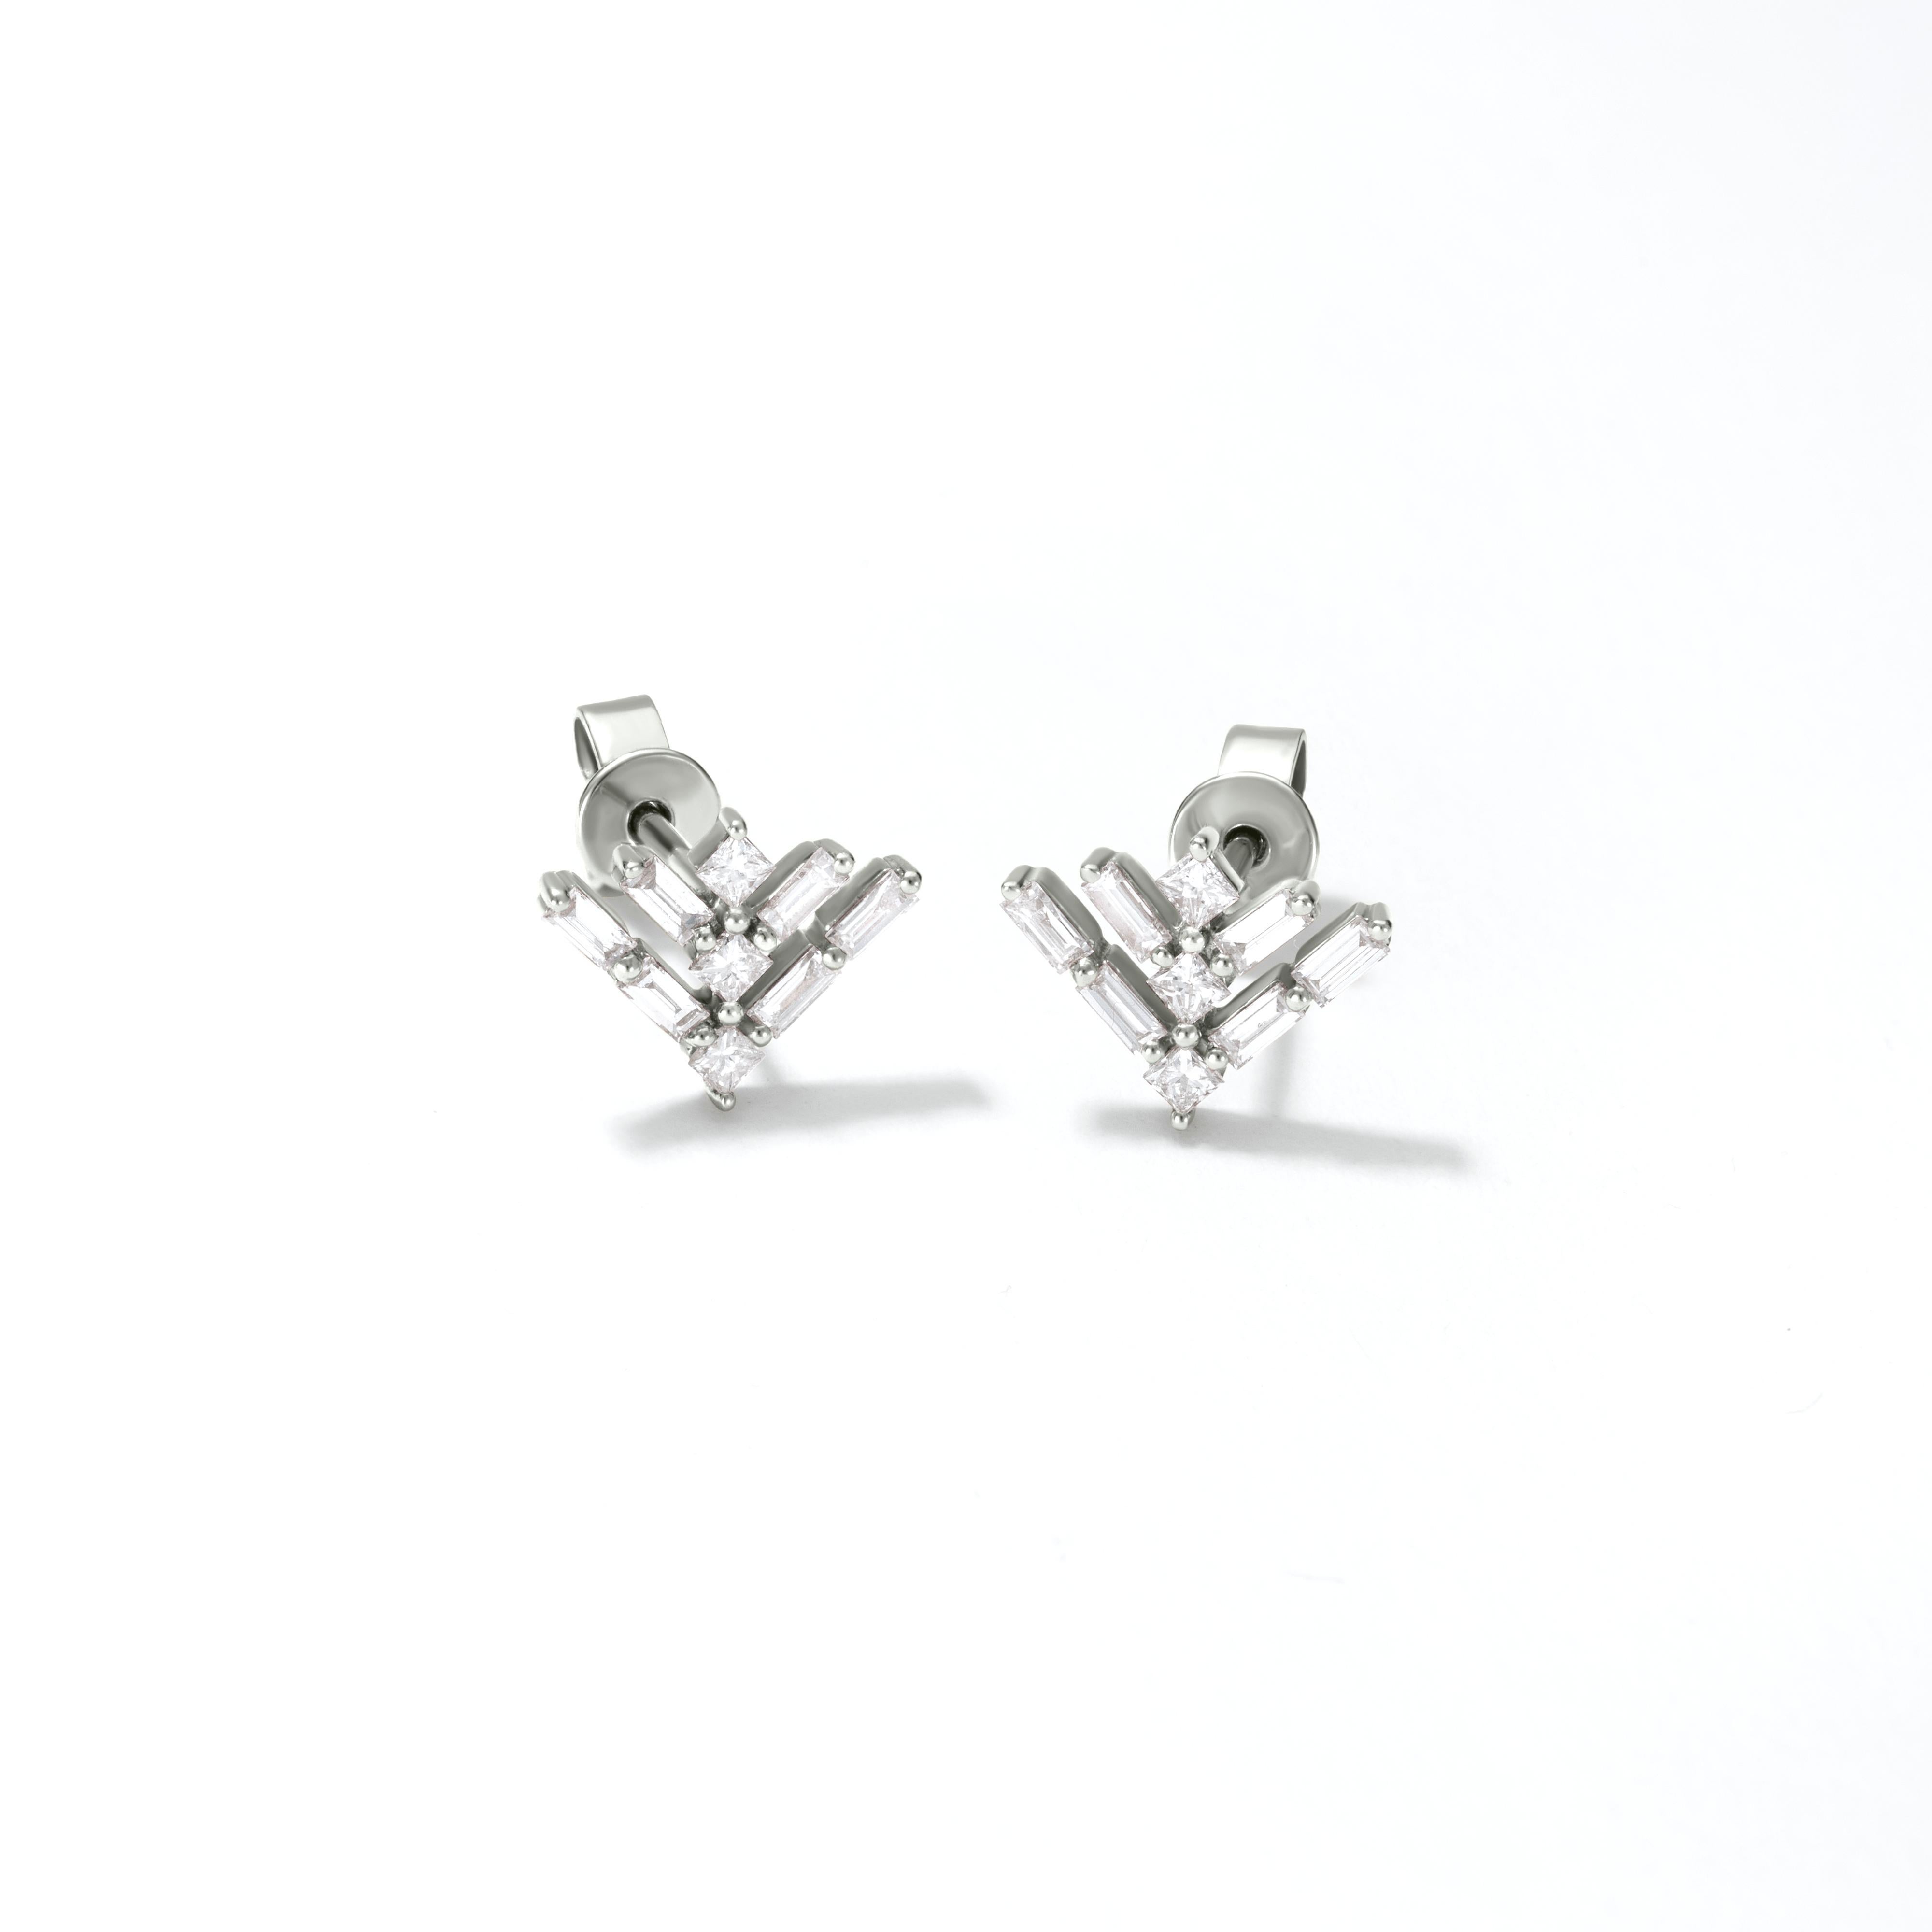 Baguette Cut Luxle 0.38 Carat T.W Princess Cut Diamond Arrow Stud Earrings in 18k White Gold For Sale